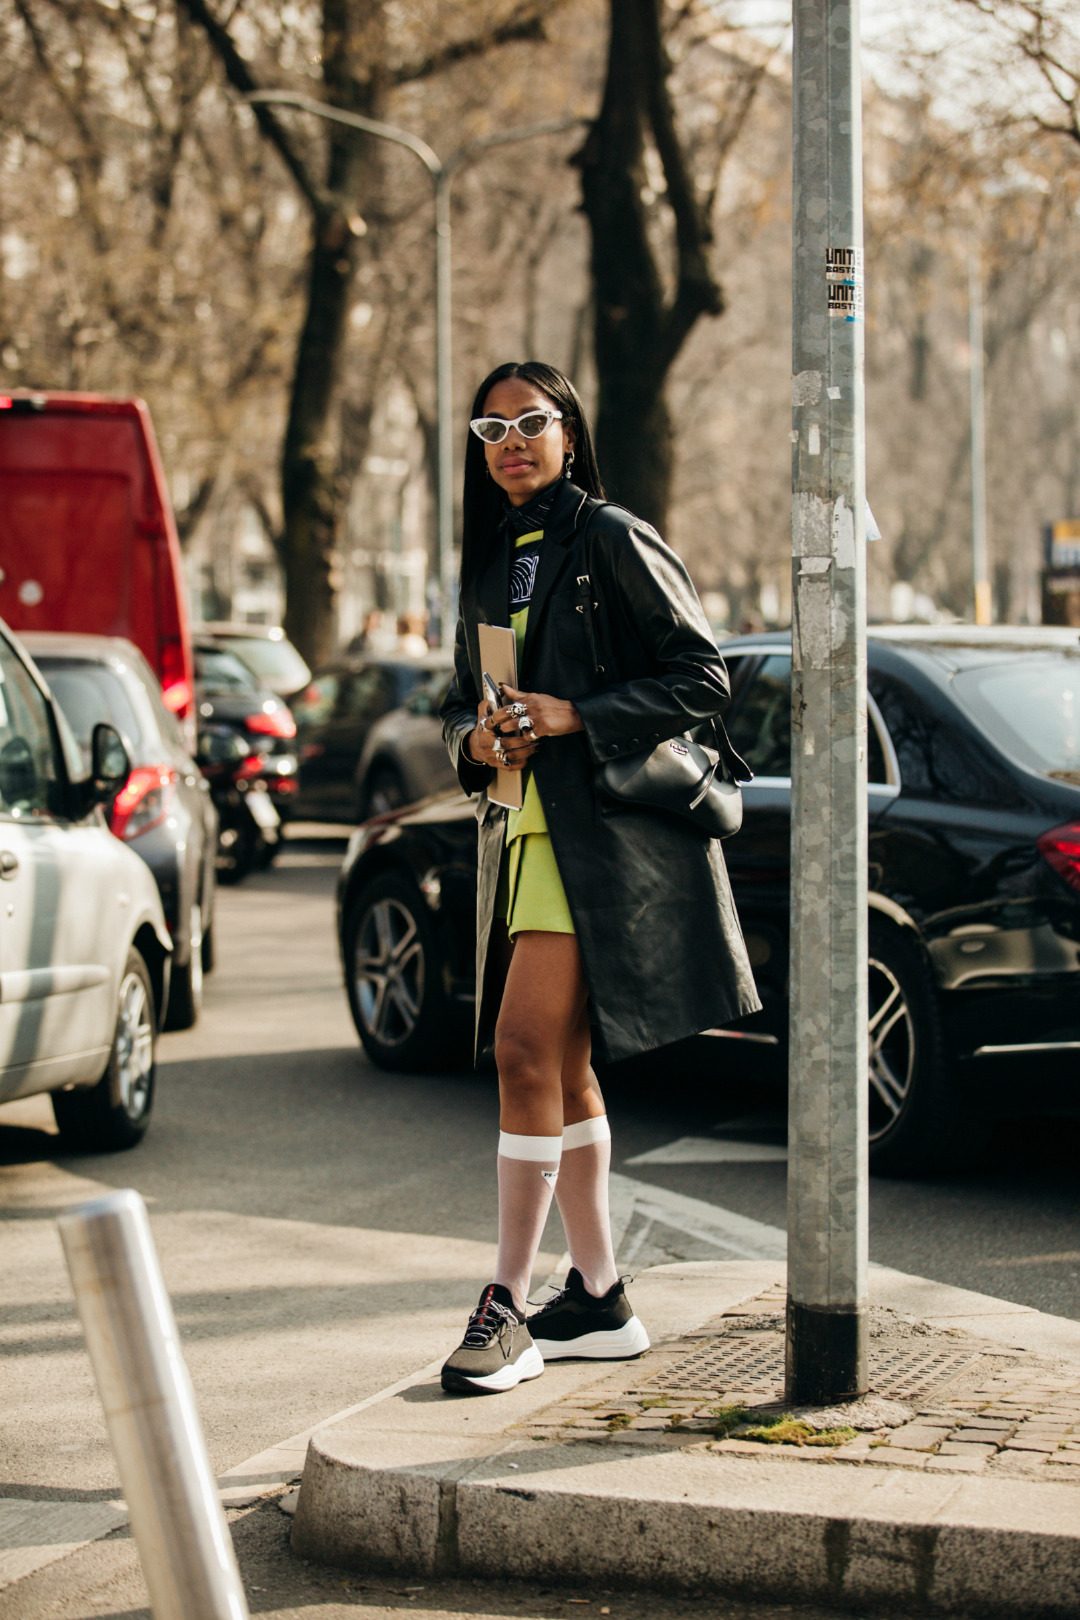 Sokak Stili: 2019-20 Sonbahar/Kış Milano Moda Haftası 5. Gün